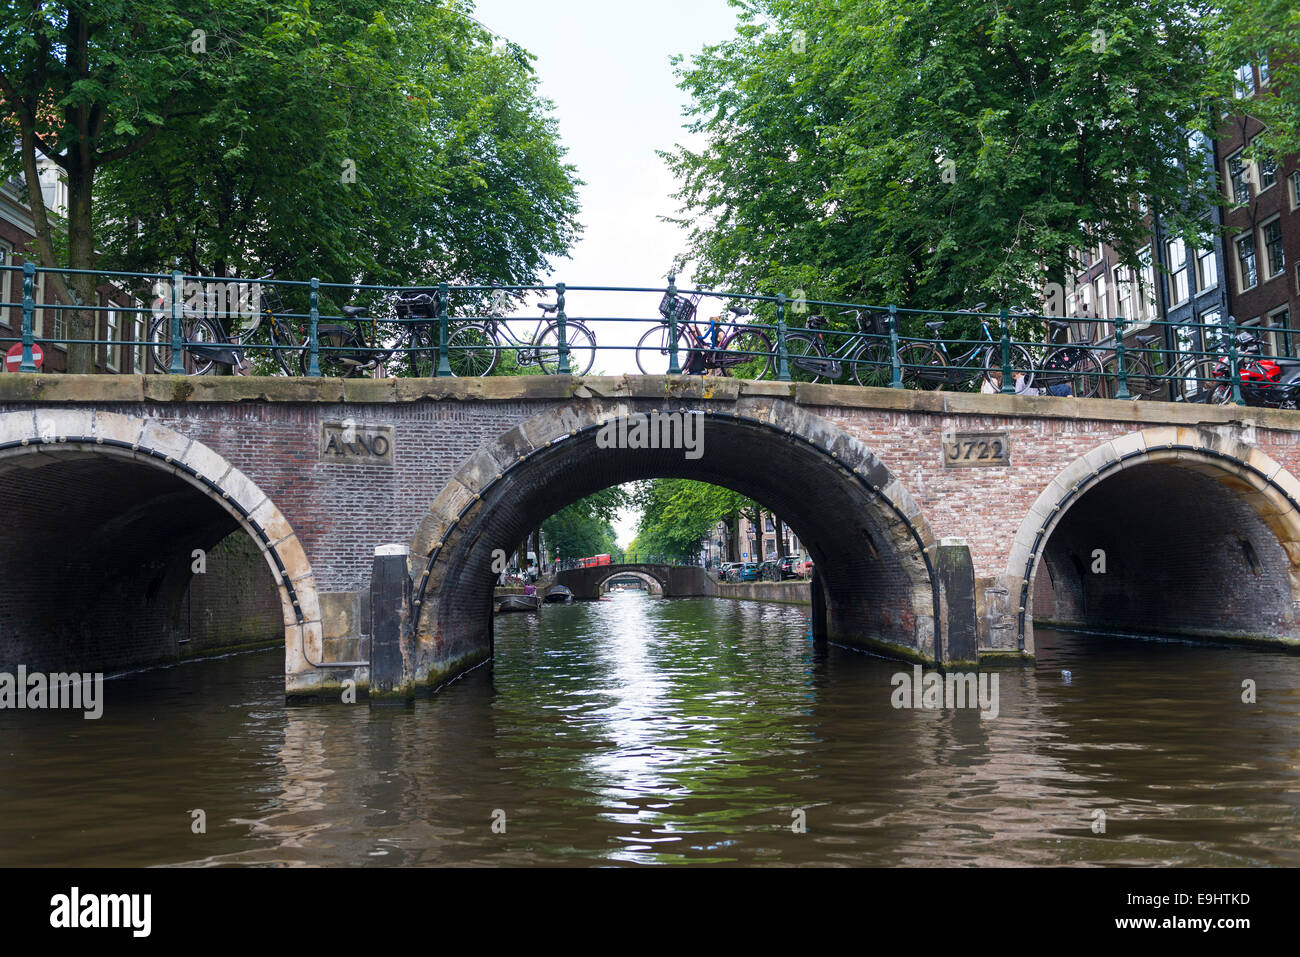 Die fünf Brücken über die Reguliersgracht Kanal in Amsterdam, Holland Stockfoto